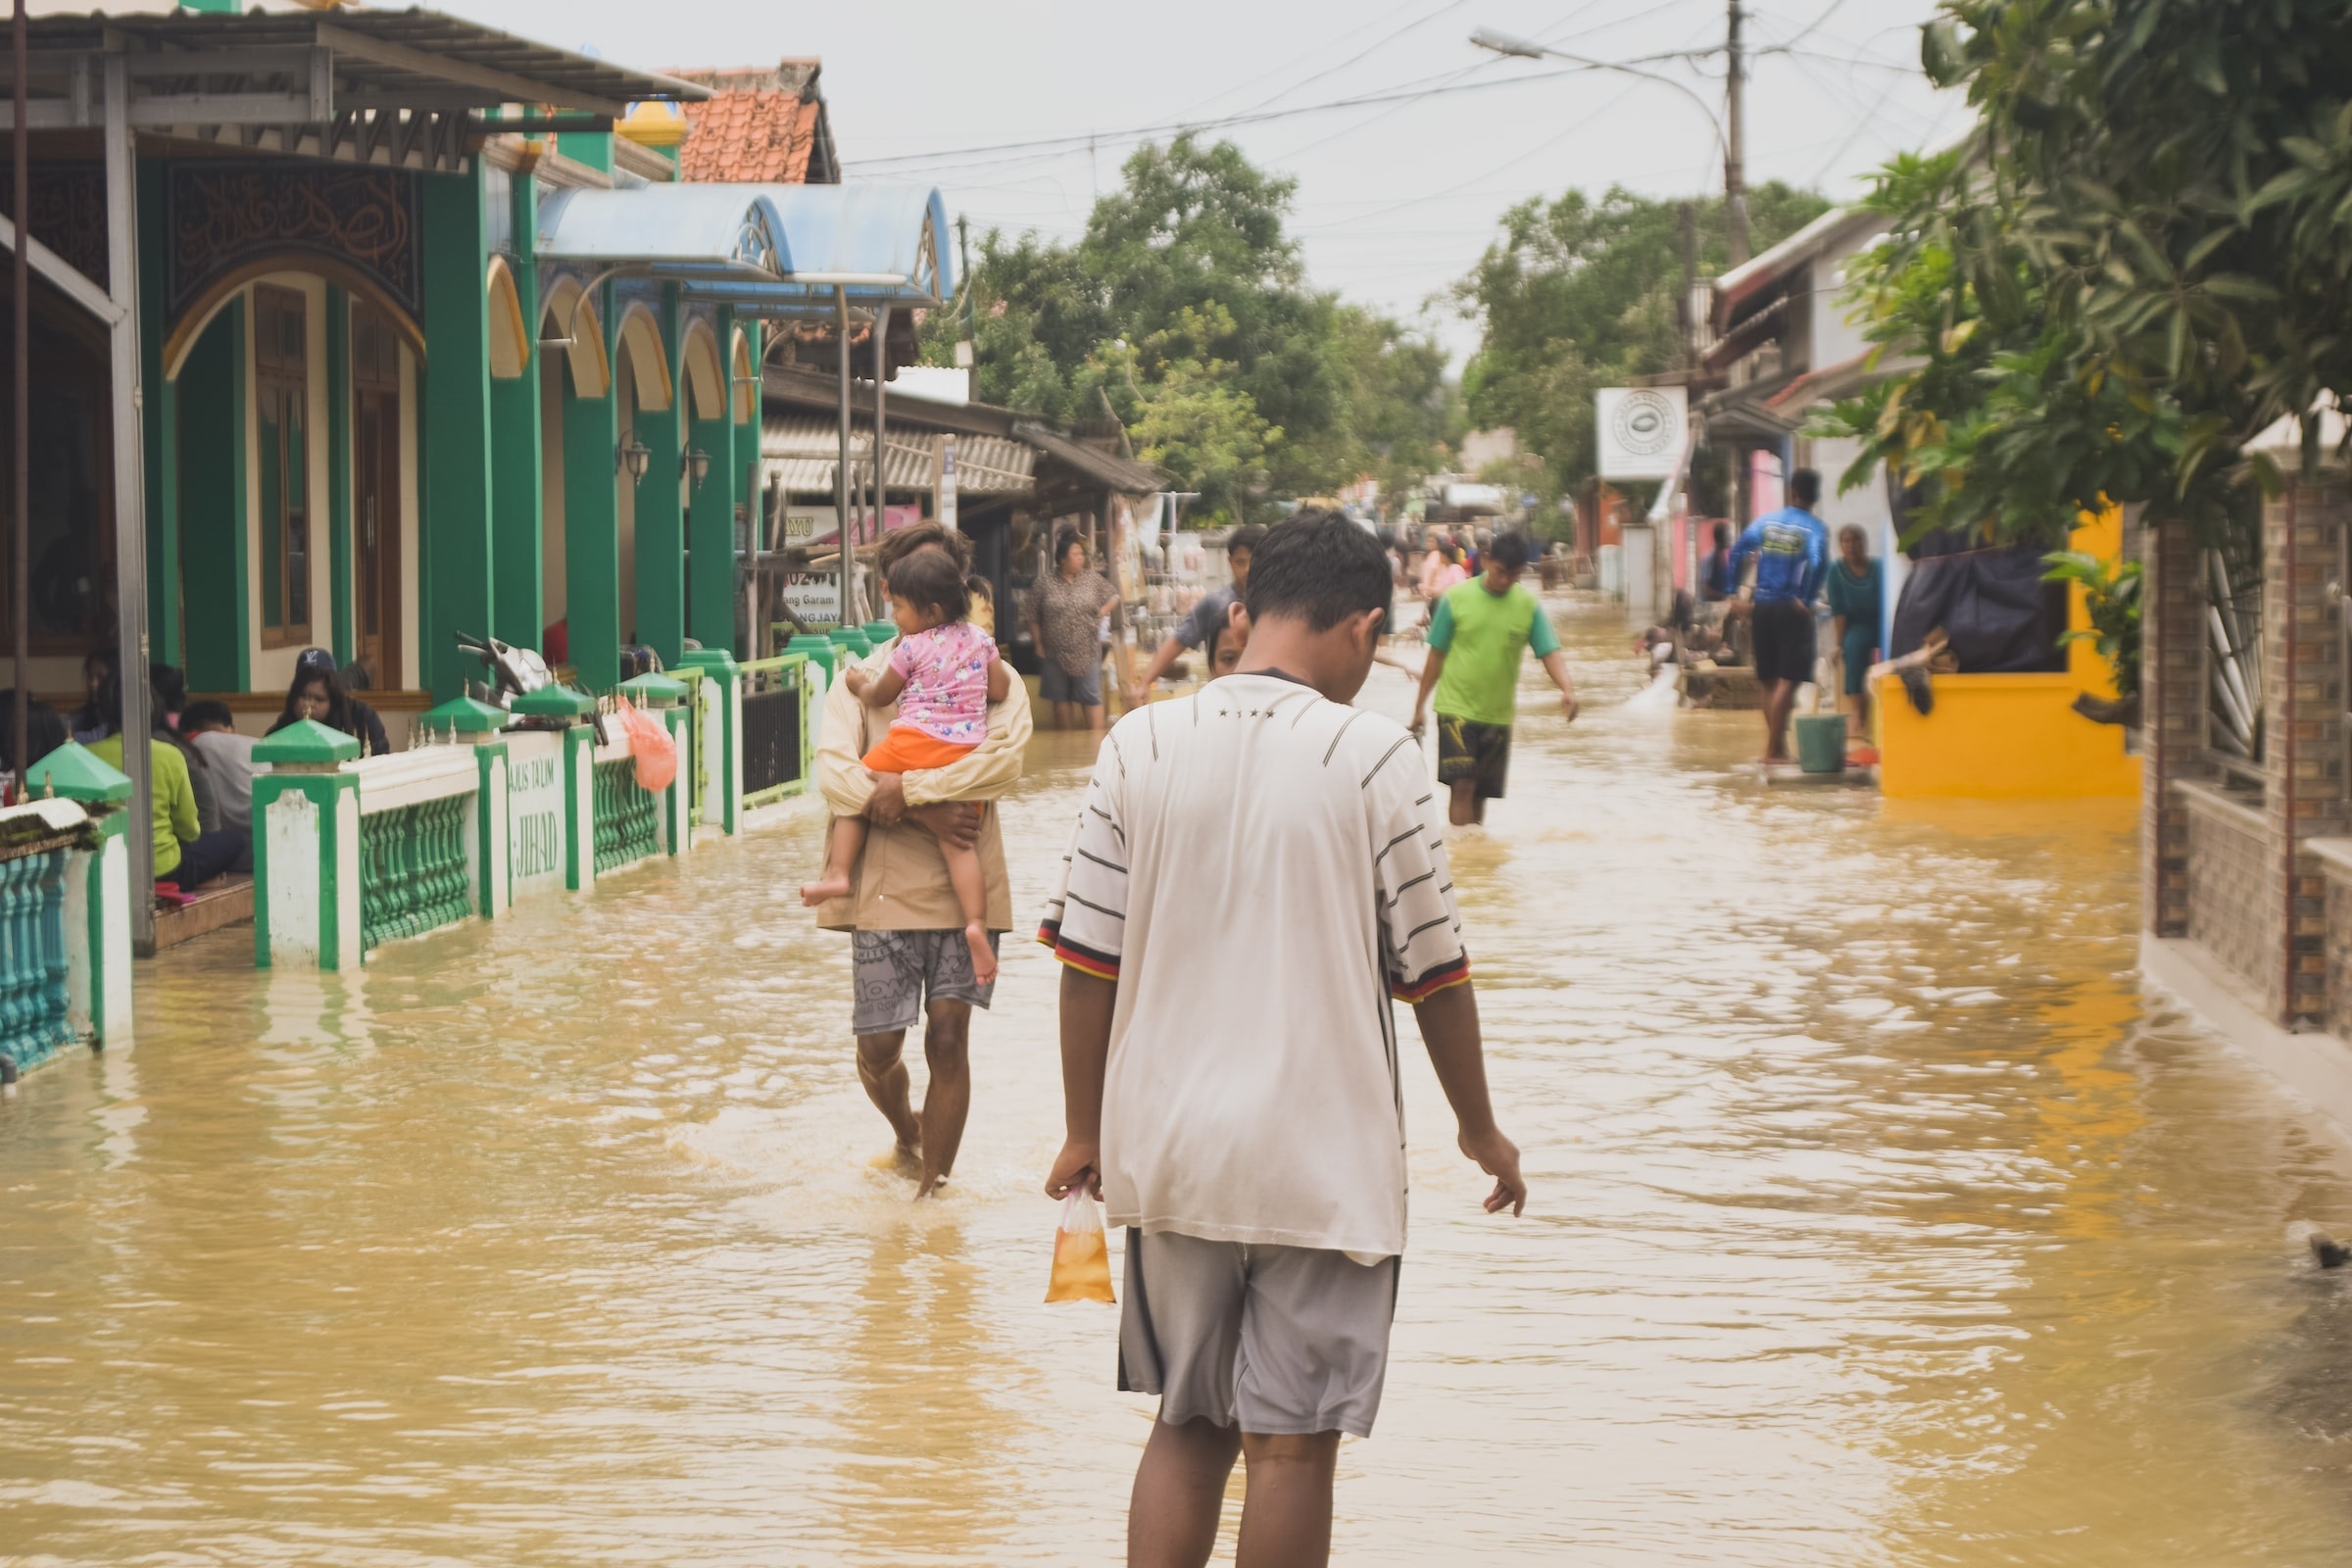 Villagers walking through flood water.